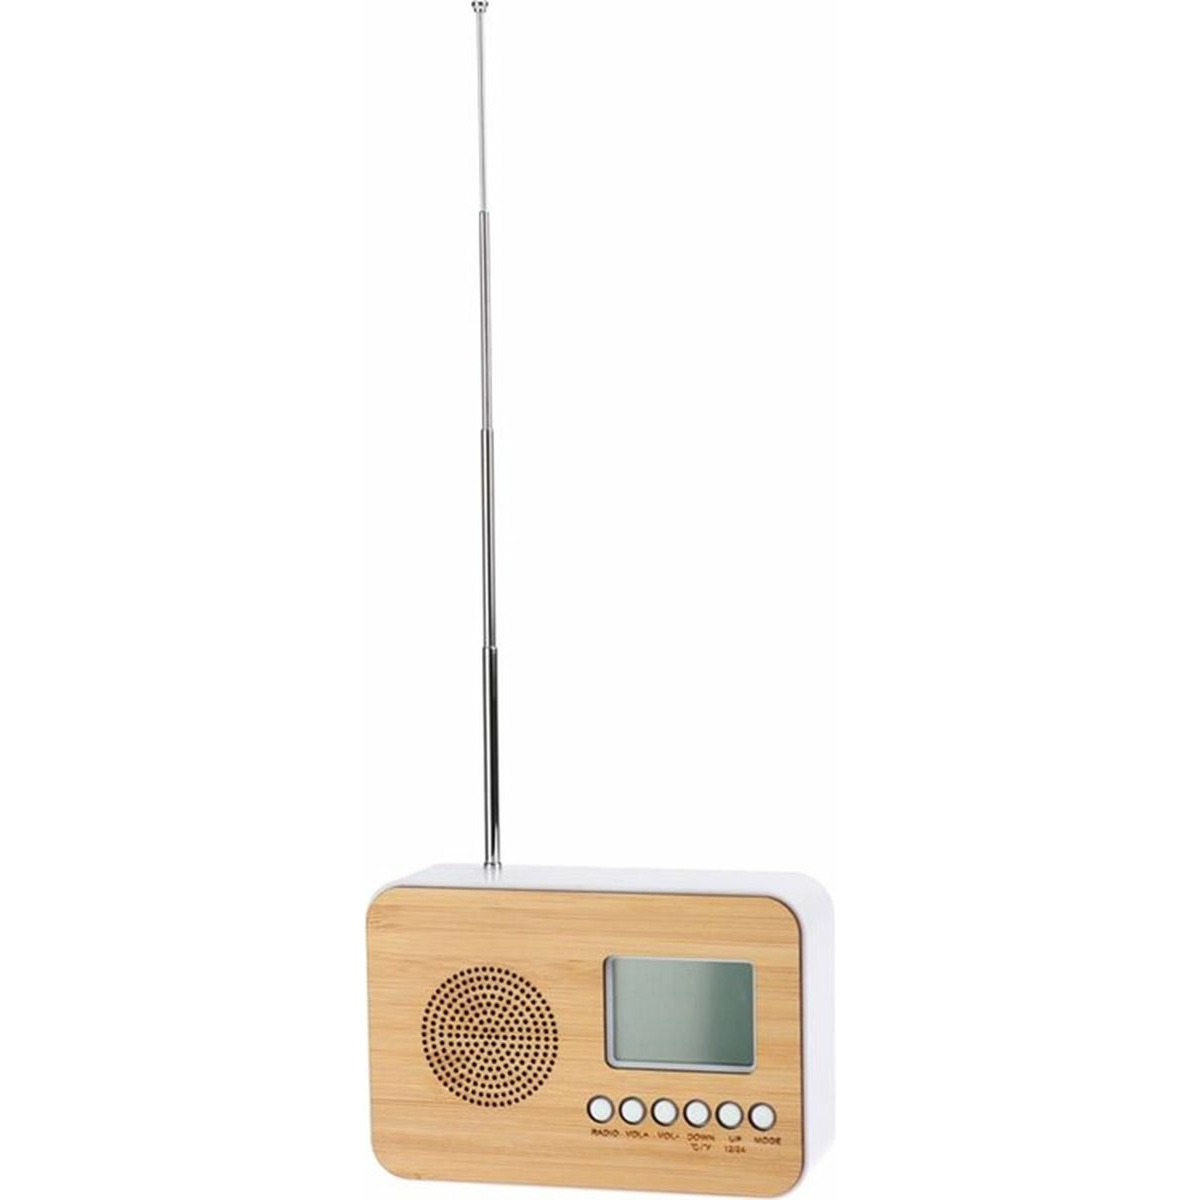 Digitale wekker naturel-wit kunststof 14 x 6 x 10 cm alarm klok